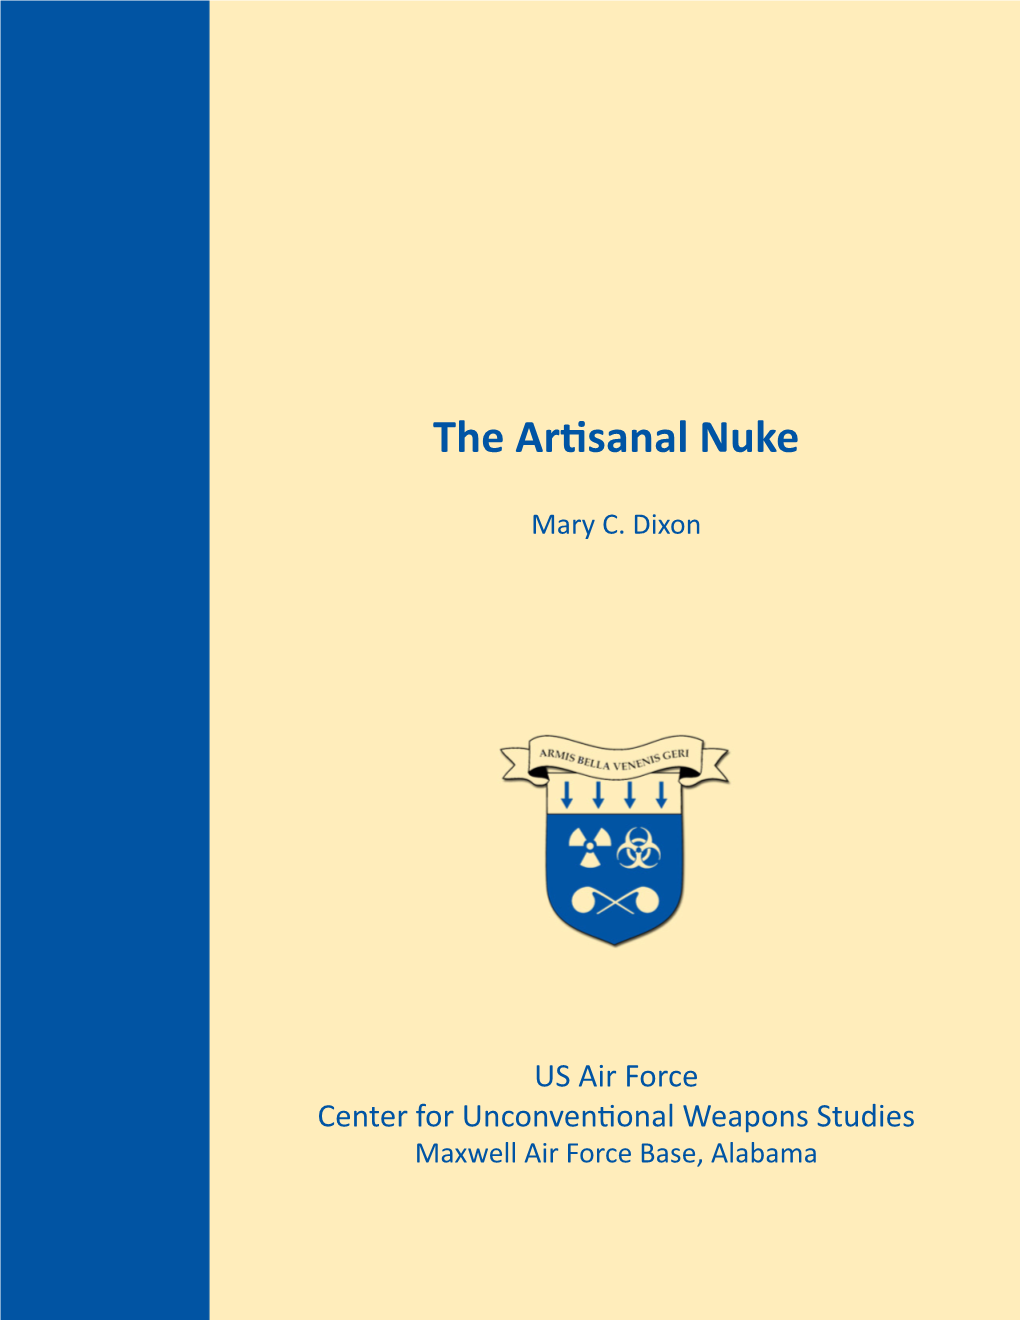 The Artisanal Nuke, 2014